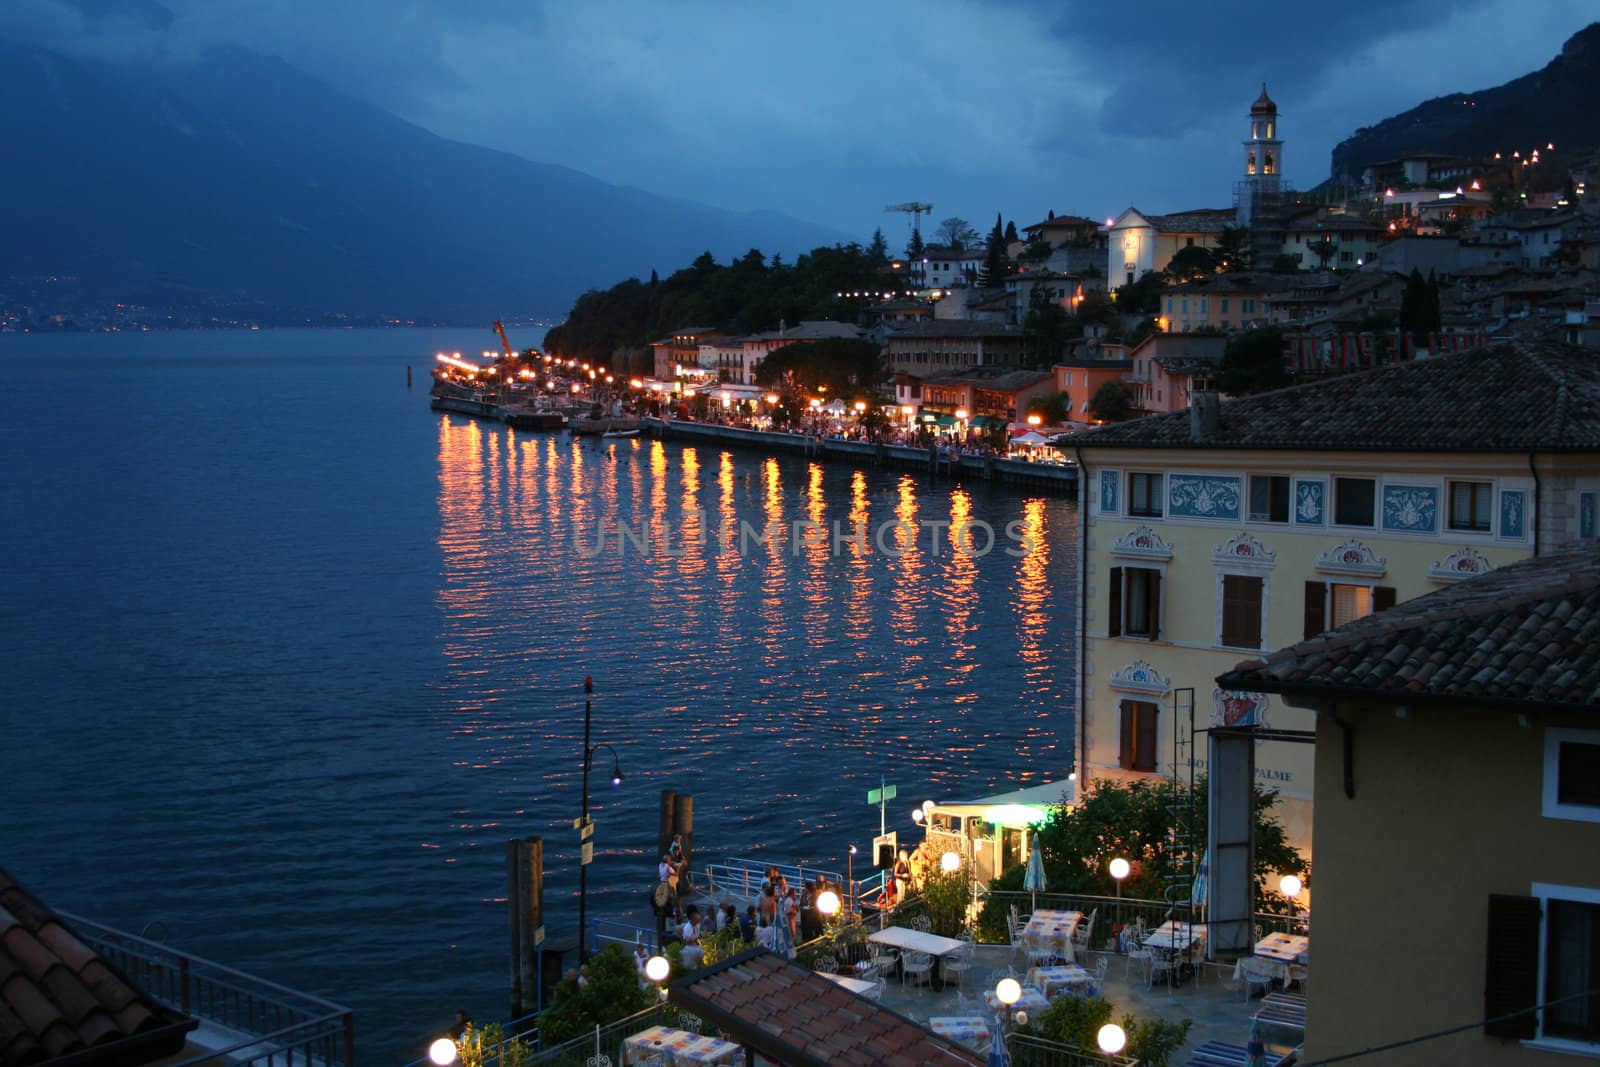 Italy. Lake Garda. Limone sul Garda town by oxanatravel